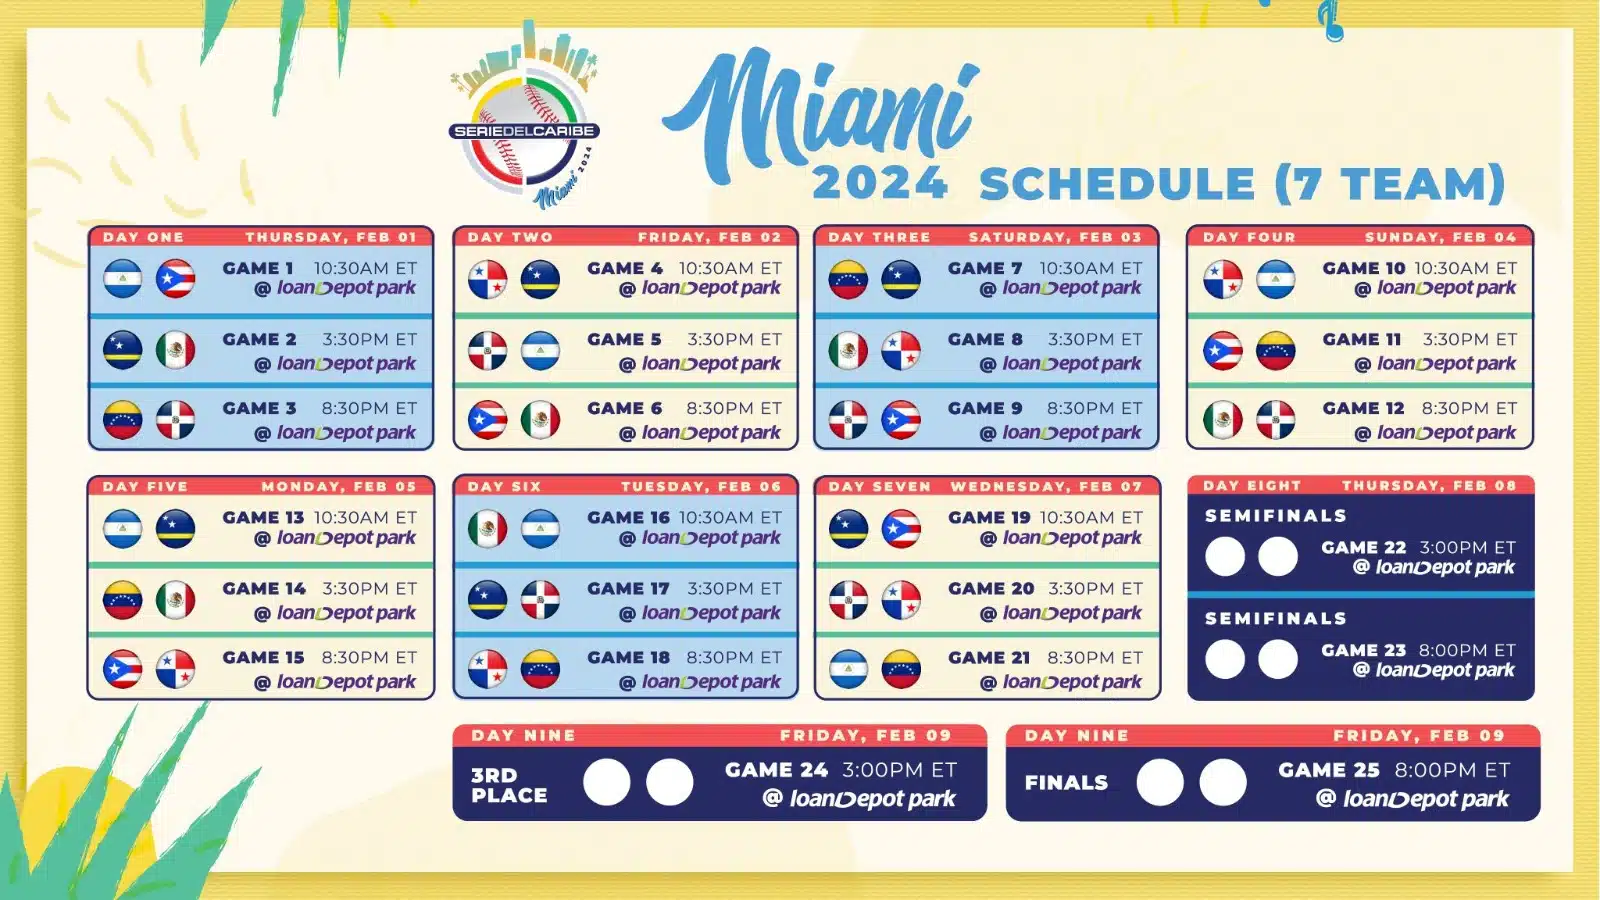 ¡Definido! Revisa aquí el calendario de la Serie del Caribe Miami 2024